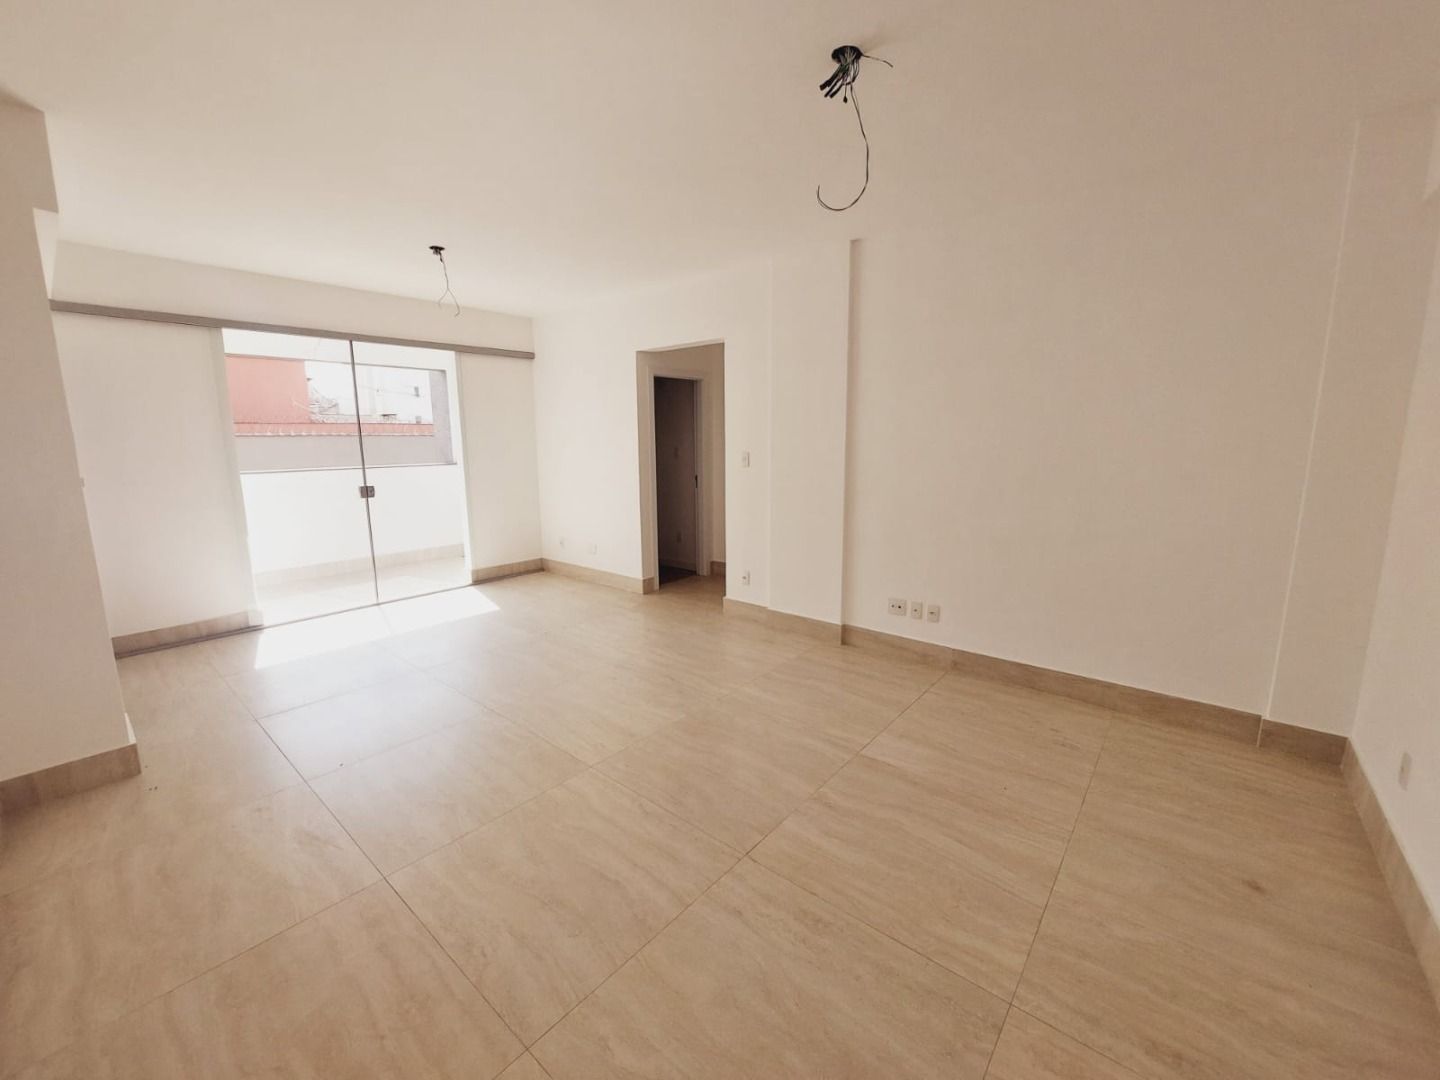 Apartamento, 3 quartos, 18 m² - Foto 2